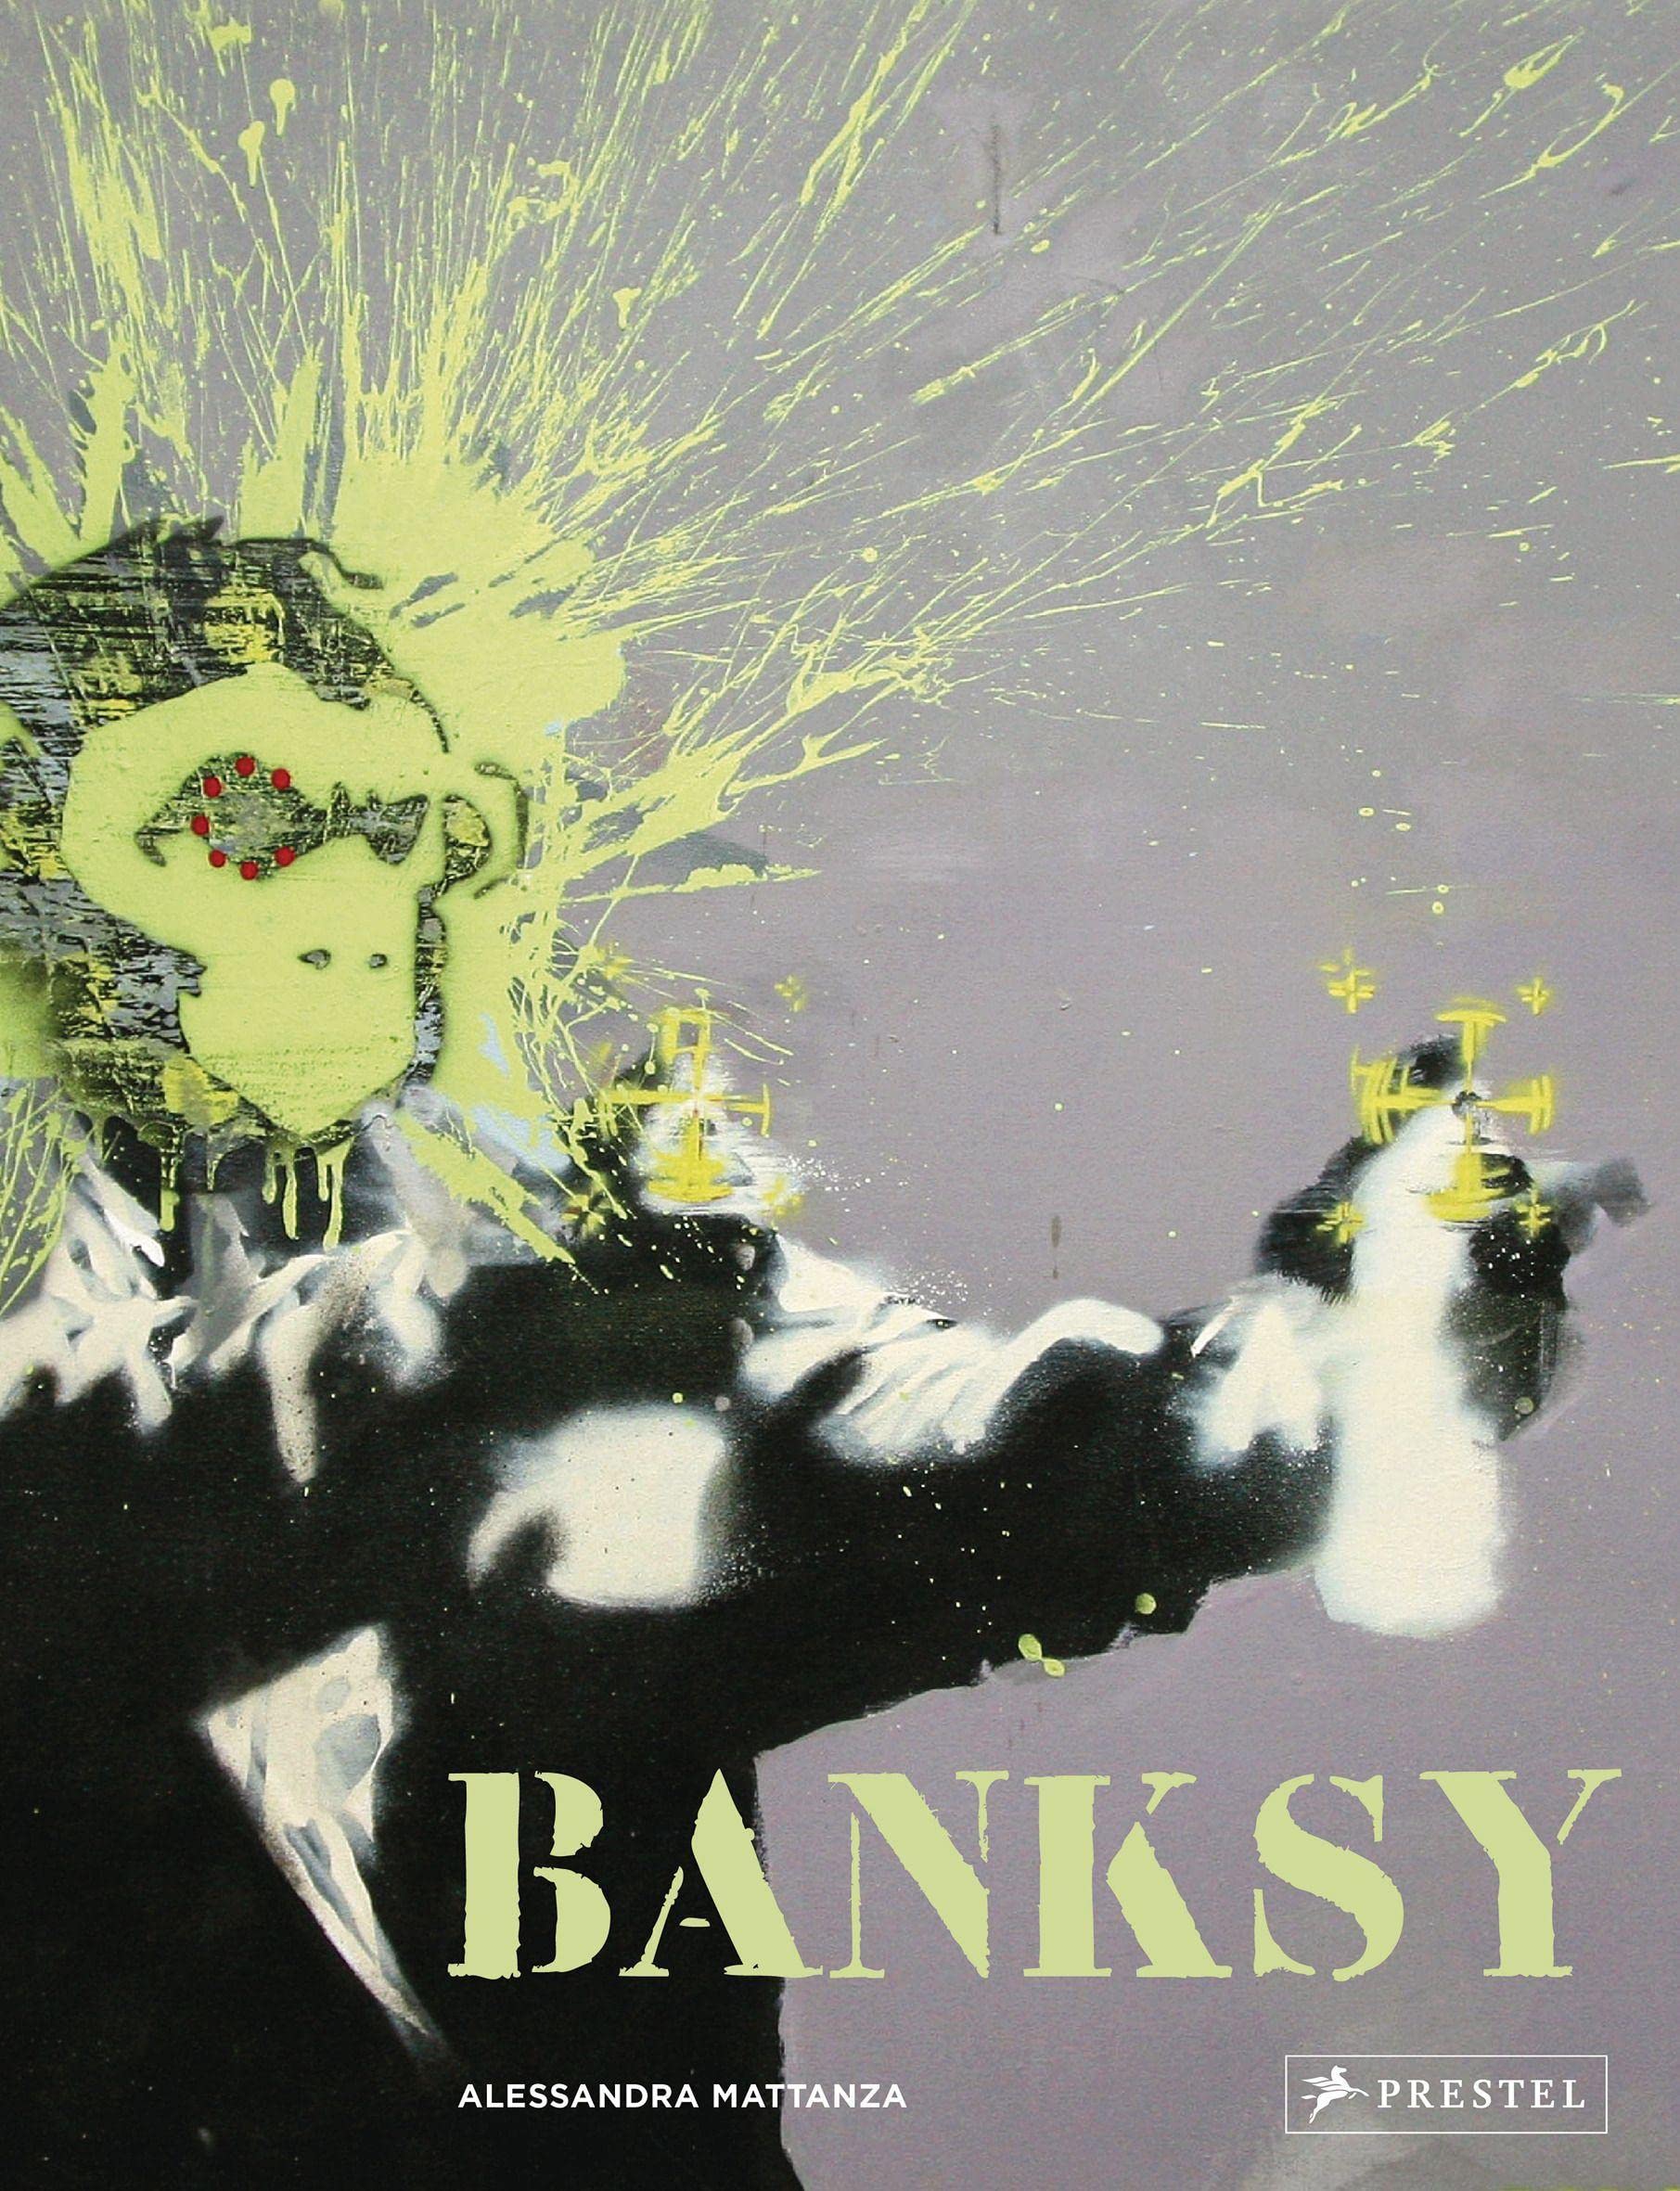 Alessandra Mattanza | BUY FROM AMAZON German Edition - Banksy: Das ultimative Buch - Mit großformatigen Abbildungen von Banksys bekanntesten Motiven.